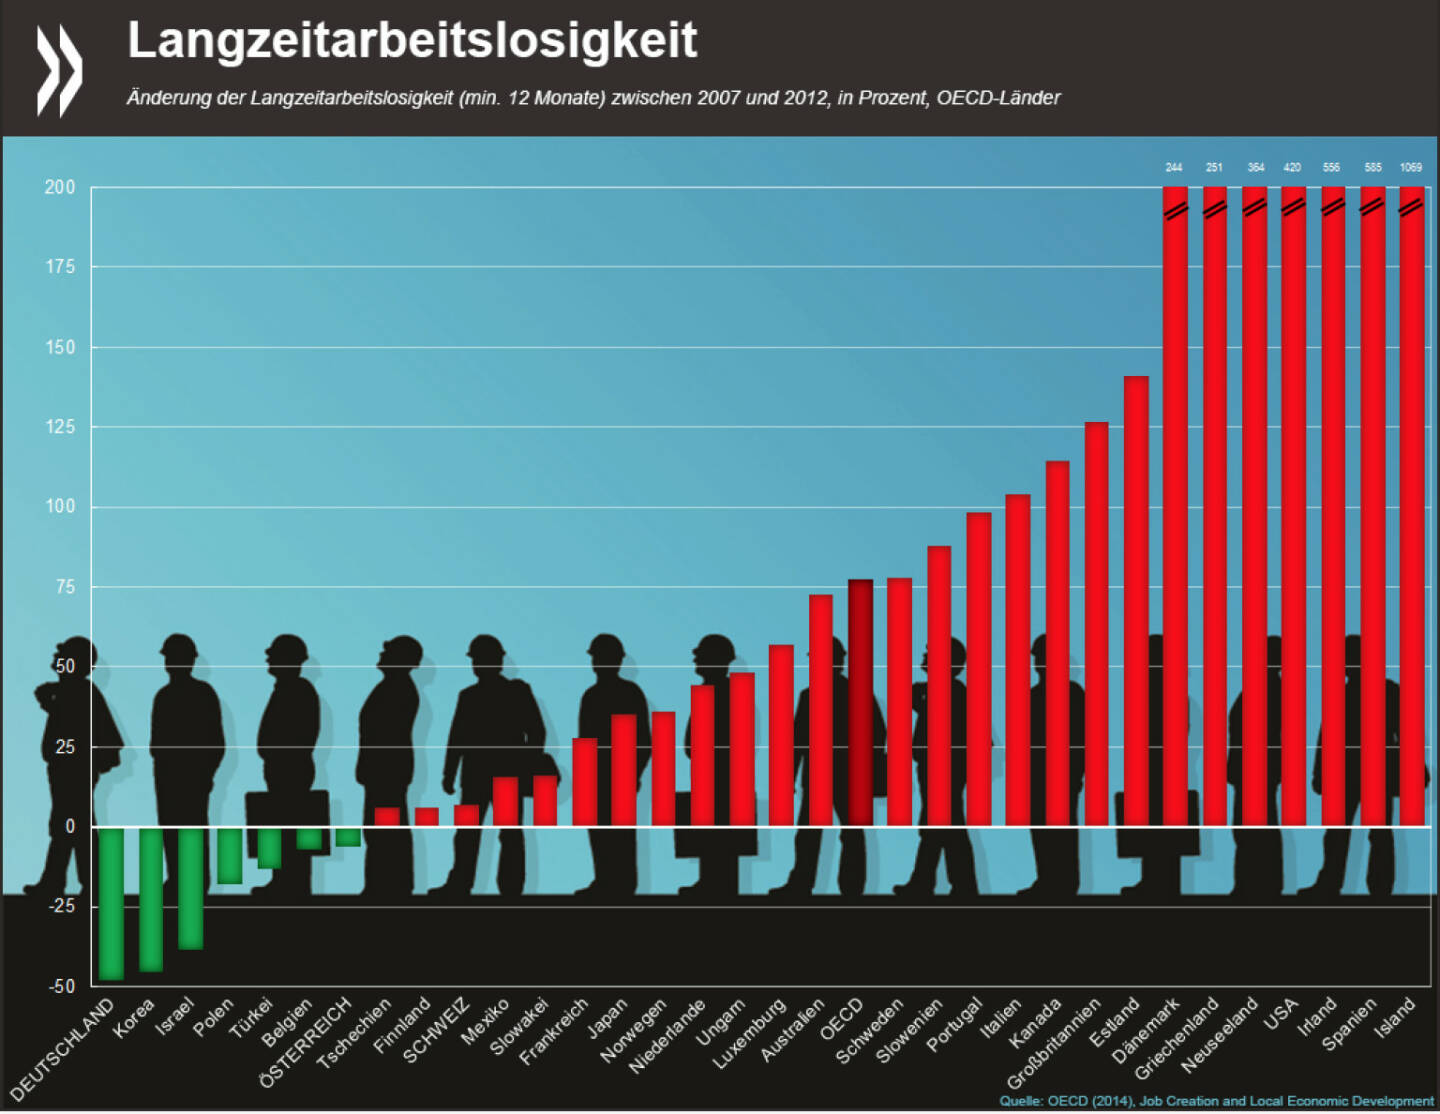 Happy New Year! In Deutschland ist die Langzeitarbeitslosigkeit während der Krisenjahre 2007-2012 um 50 Prozent zurückgegangen – und damit stärker als irgendwo sonst in der OECD. In 13 OECD-Ländern hingegen hat sie sich in diesem Zeitraum verdoppelt oder vervielfacht.
Mehr Infos unter: http://bit.ly/1zZ6wLn (S. 88 f.)